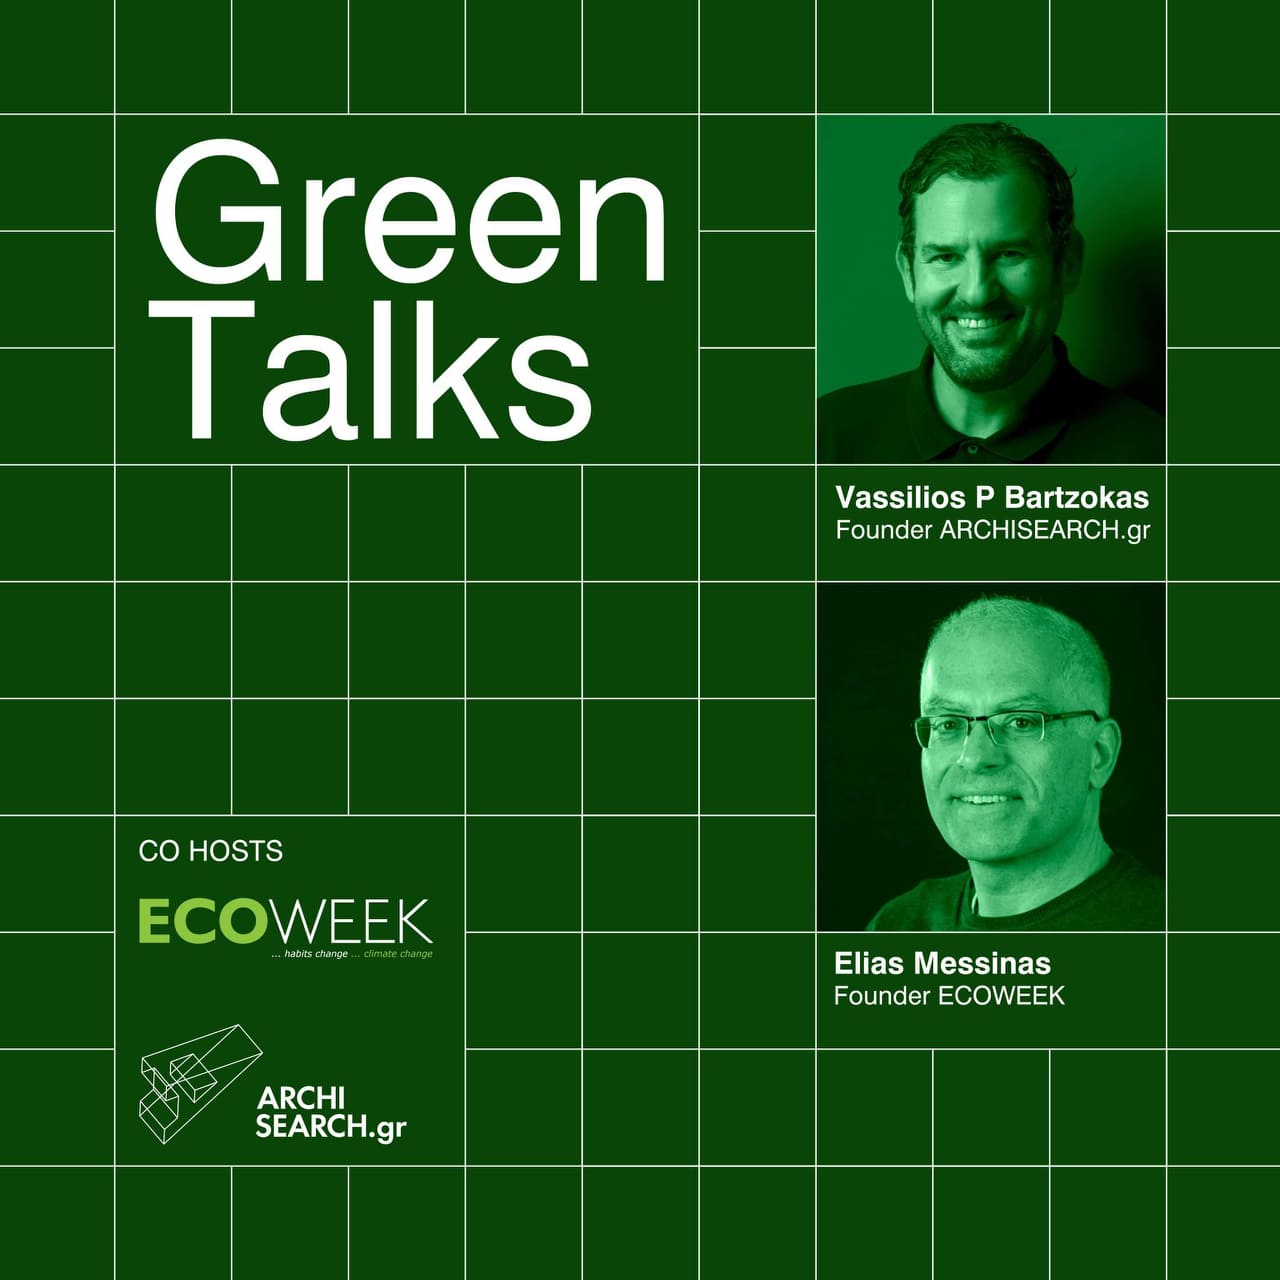 Archisearch Green talks by ECOWEEK & Archisearch.gr | Episode 2